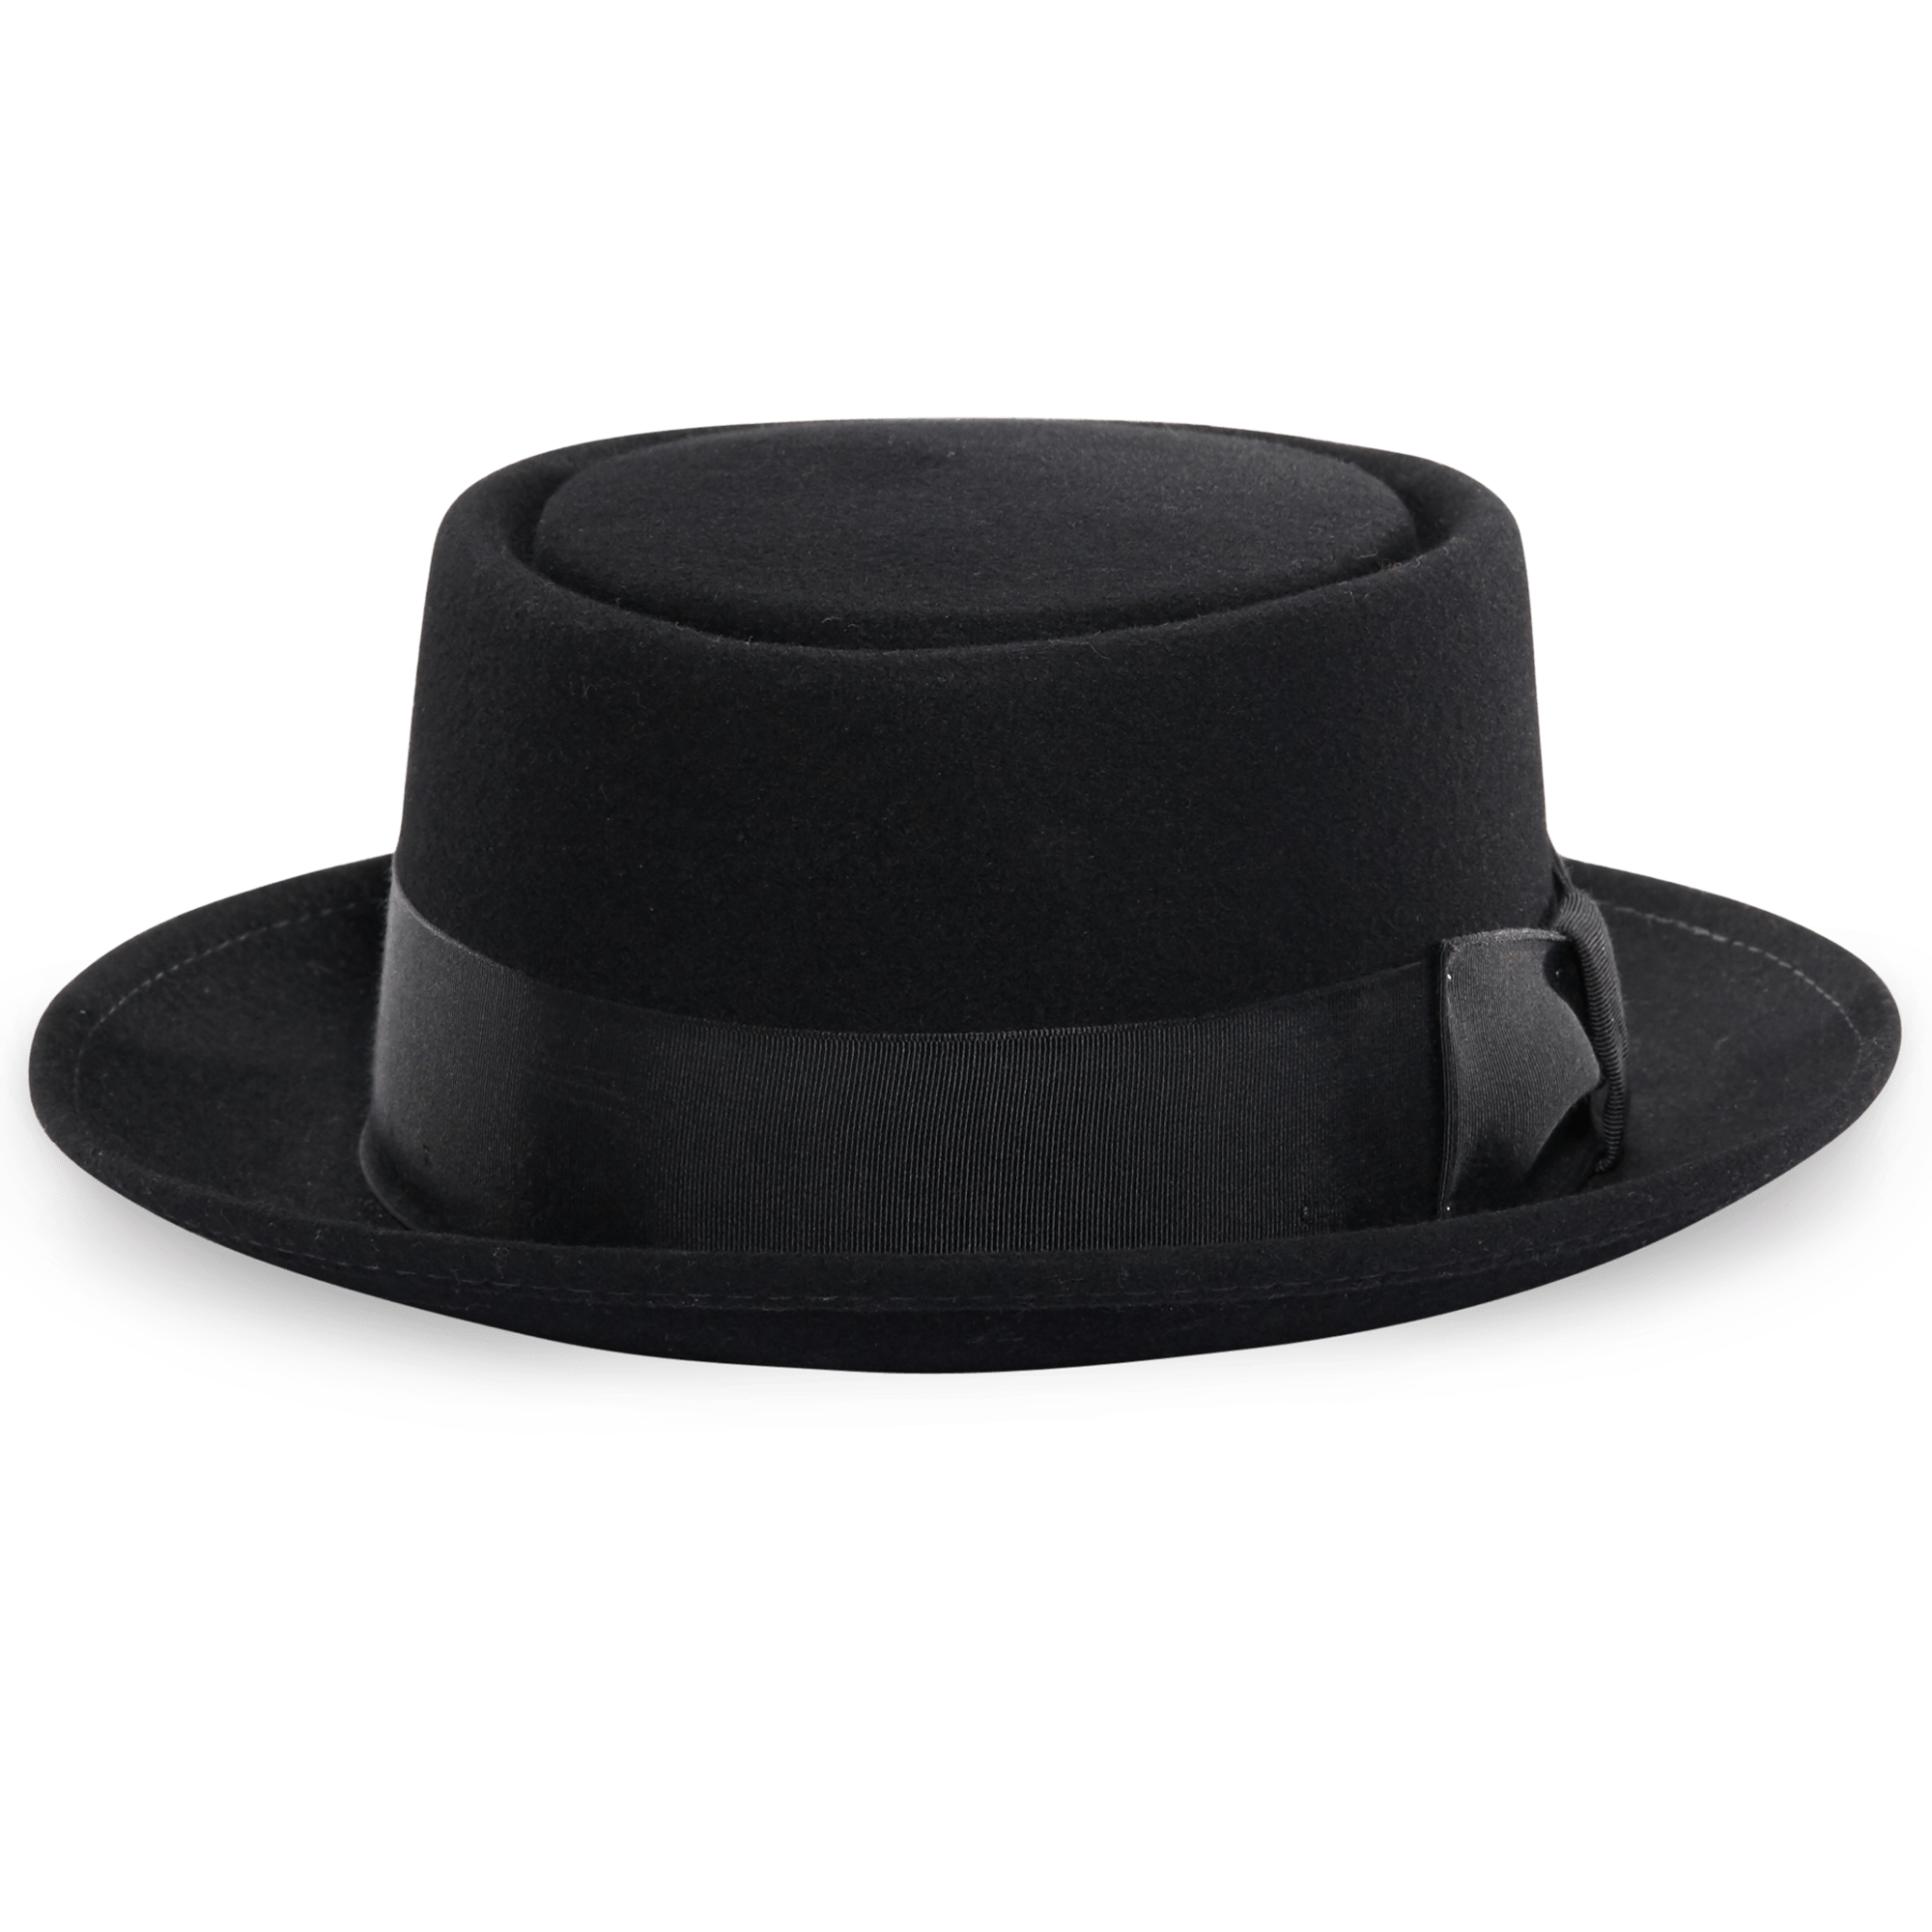 Michael Jackson Imagen de PNG de sombrero negro